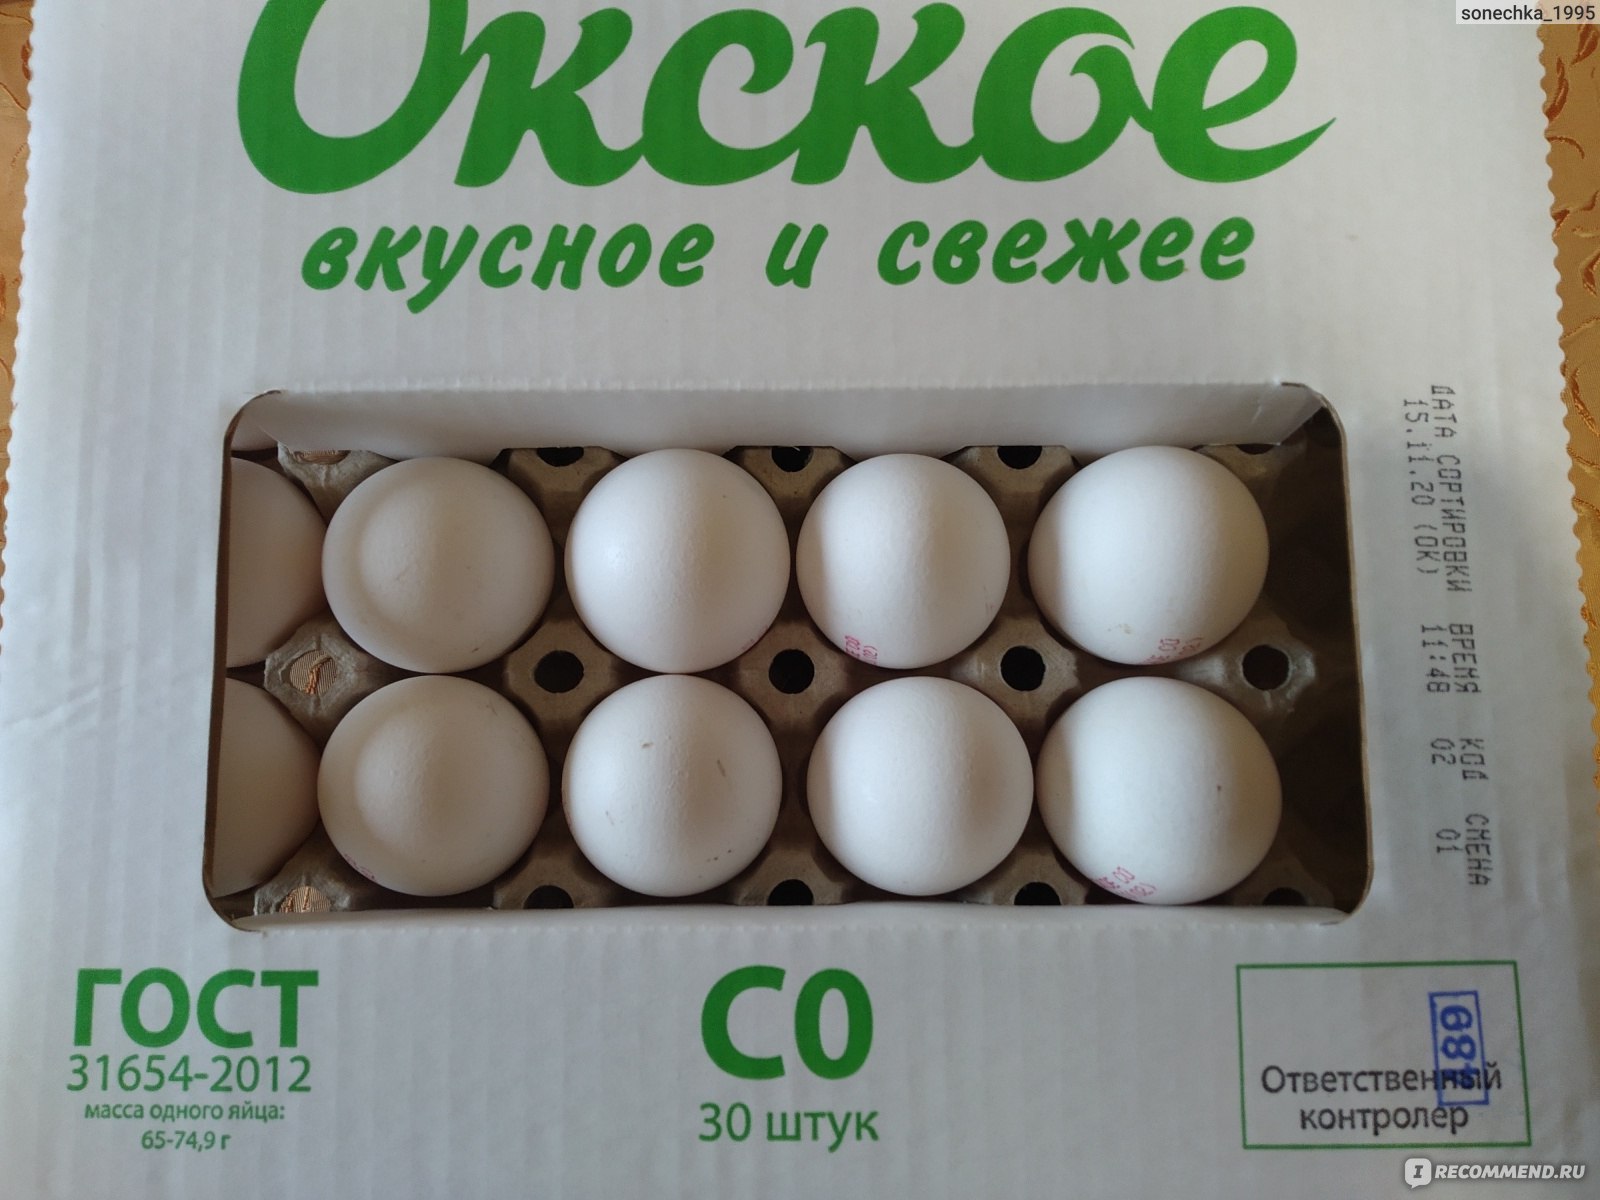 Яйцо окское с0. Окское яйцо. Окское яйцо упаковка. Окское яйцо производитель. Яйца Окские св.